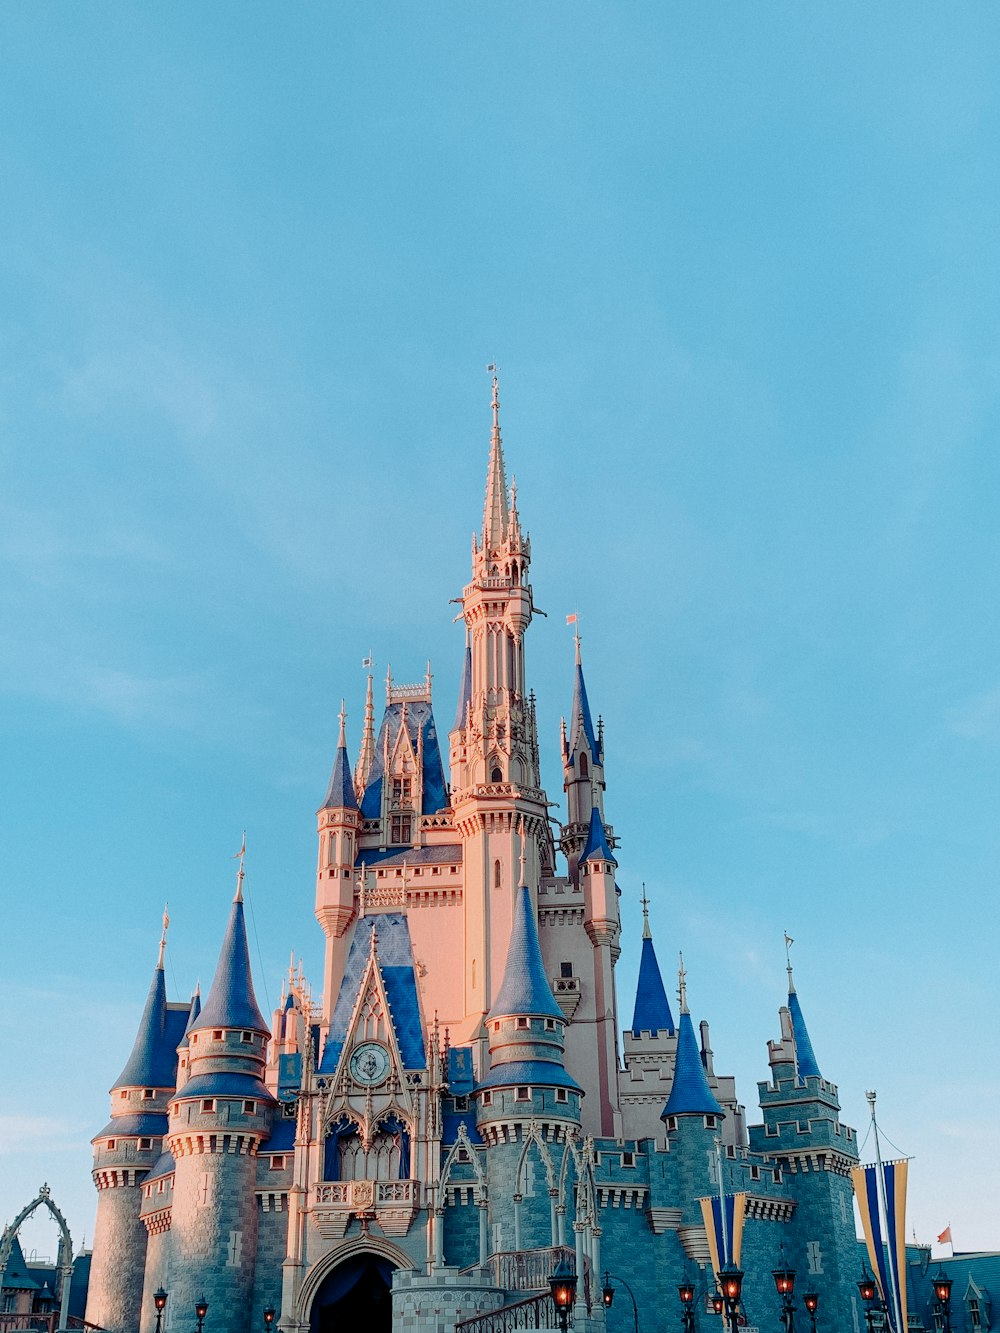 Château Disney sous le ciel bleu pendant la journée